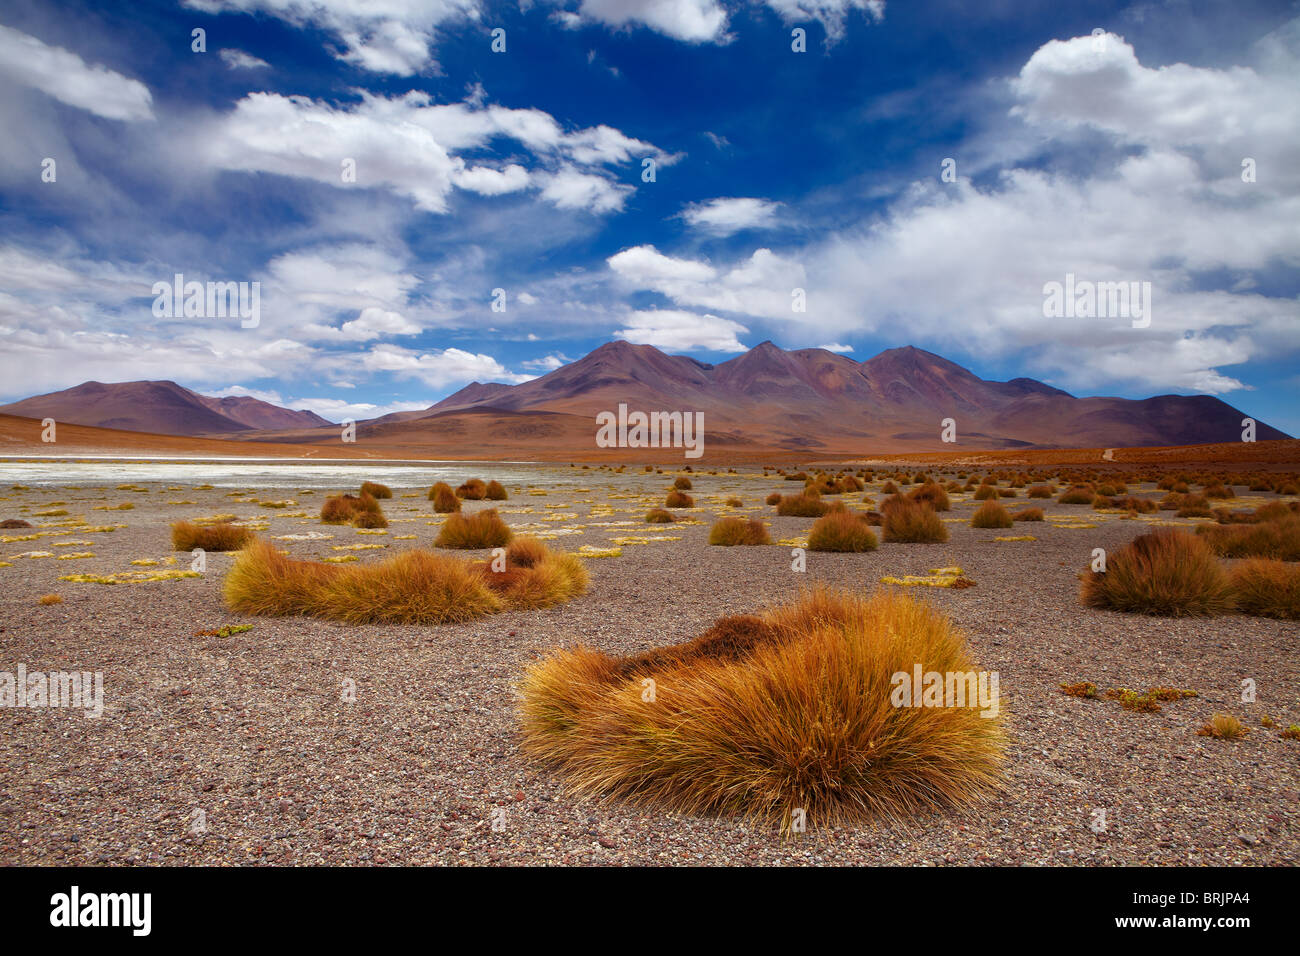 La région reculée de high desert, et les volcans de l'altiplano bolivien, près de Tapaquilcha Banque D'Images